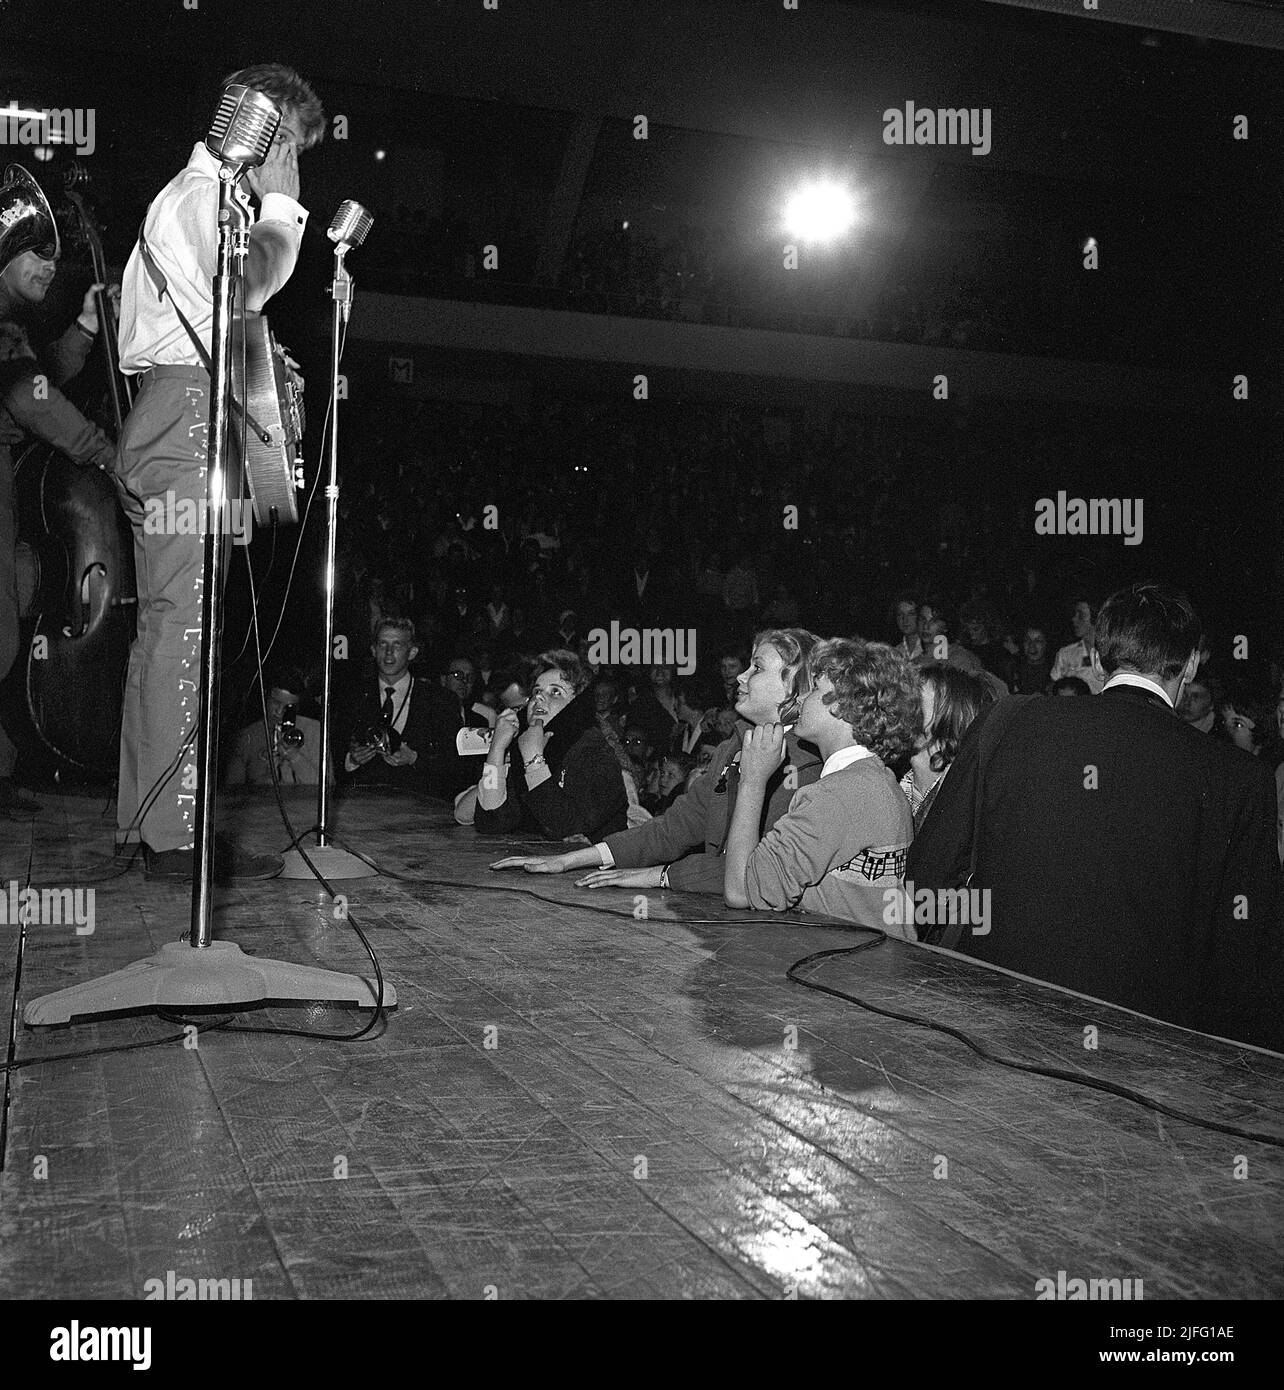 Tommy Steele. Der englische Entertainer gilt als Großbritanniens erstes Teenager-Idol und Rock and Roll-Star. Geboren im dezember 17 1936. Foto, aufgenommen als er im April 19 1958 in Stockholm in Schweden auftrat. Das Publikum ist sichtlich begeistert und ein paar junge Frauen stehen direkt neben der Bühne. Stockfoto